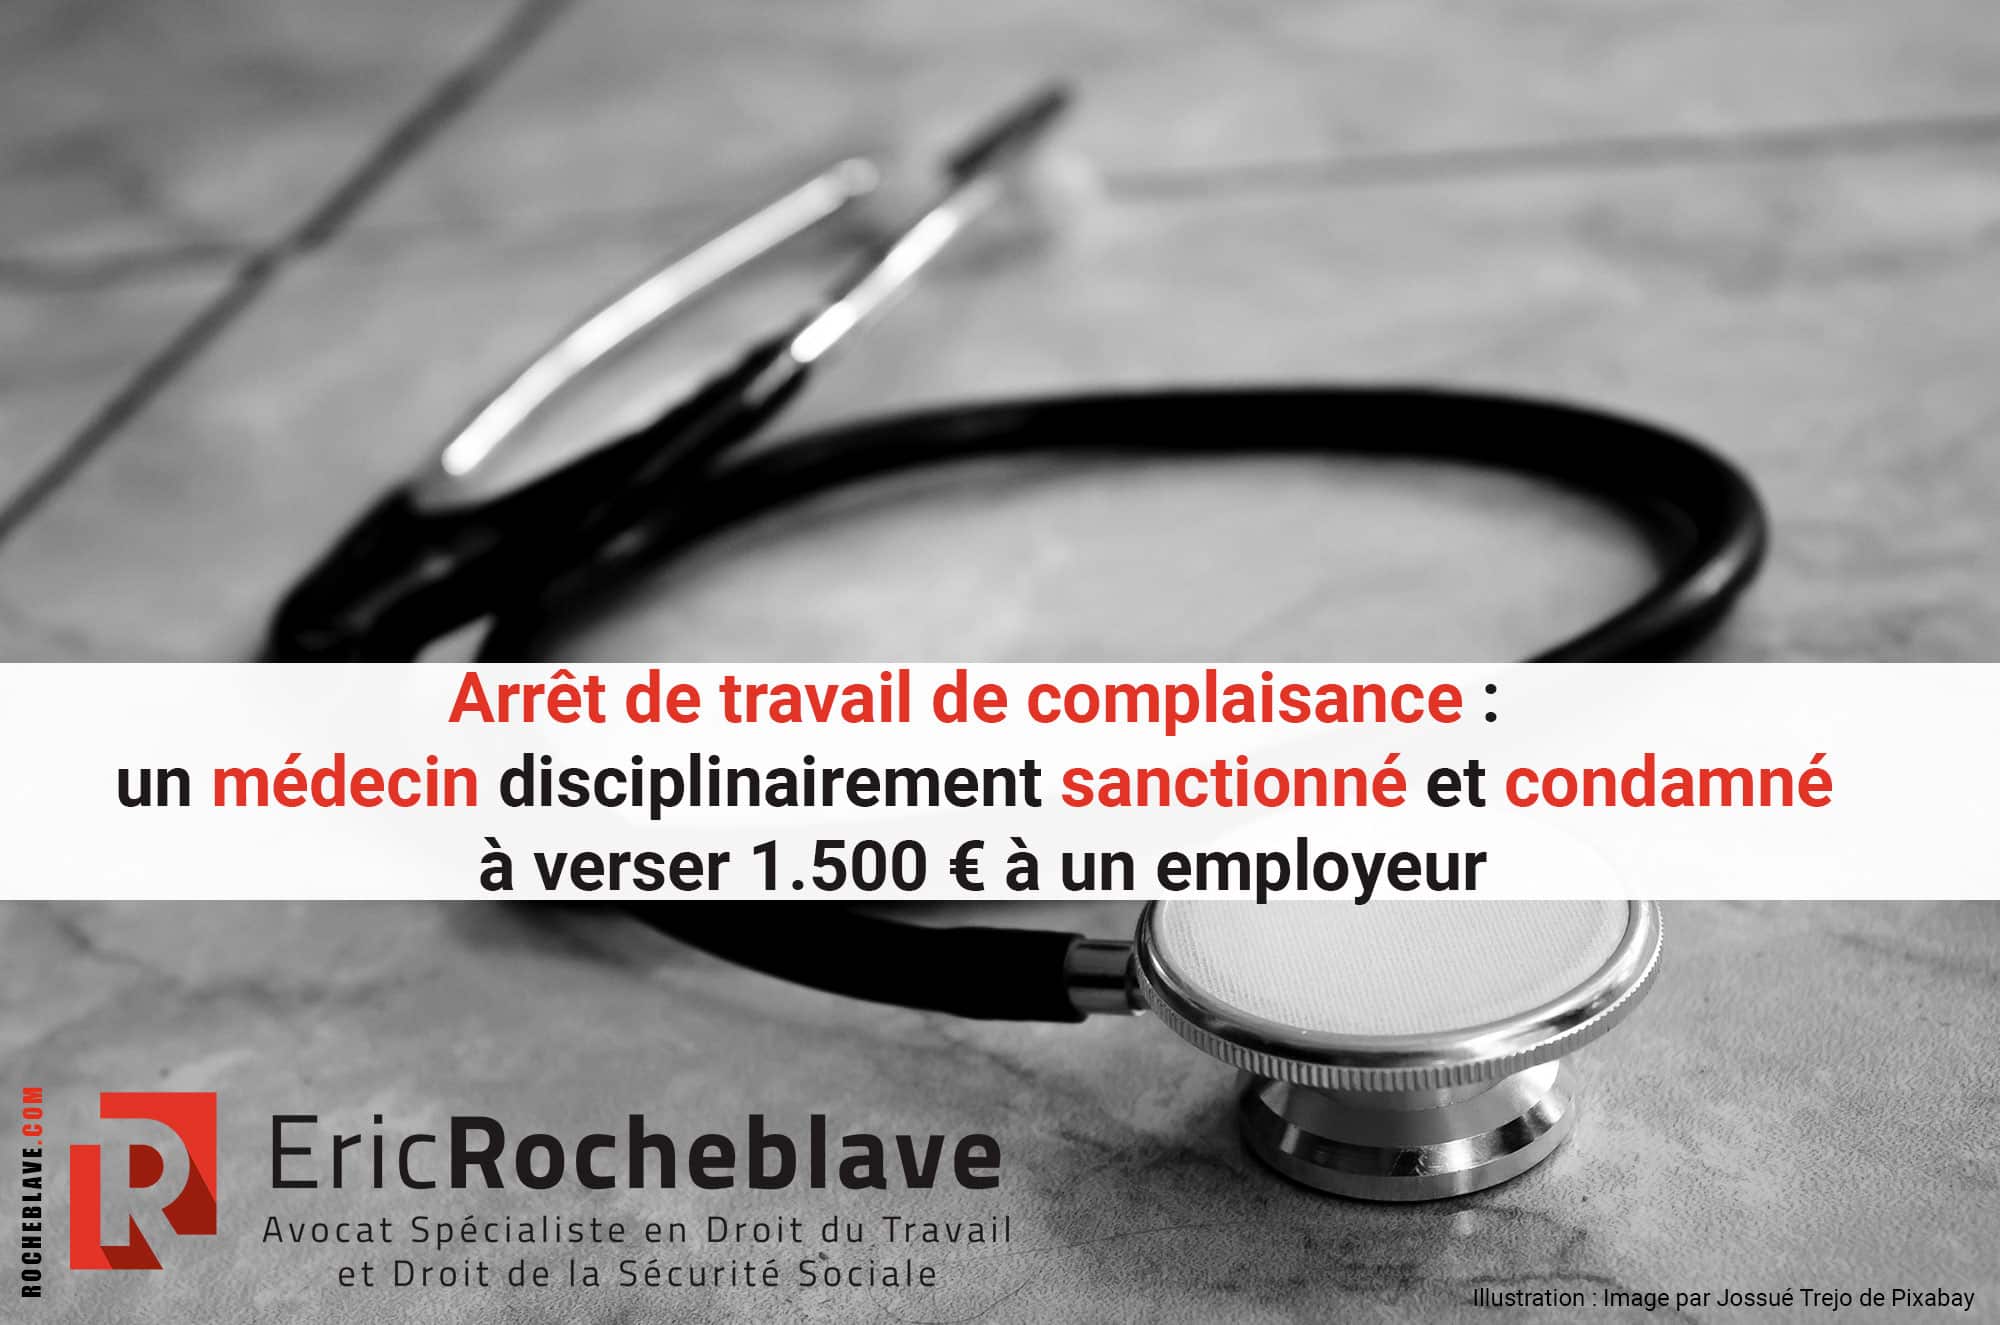 Arrêt de travail de complaisance : un médecin disciplinairement sanctionné et condamné à verser 1.500 € à un employeur